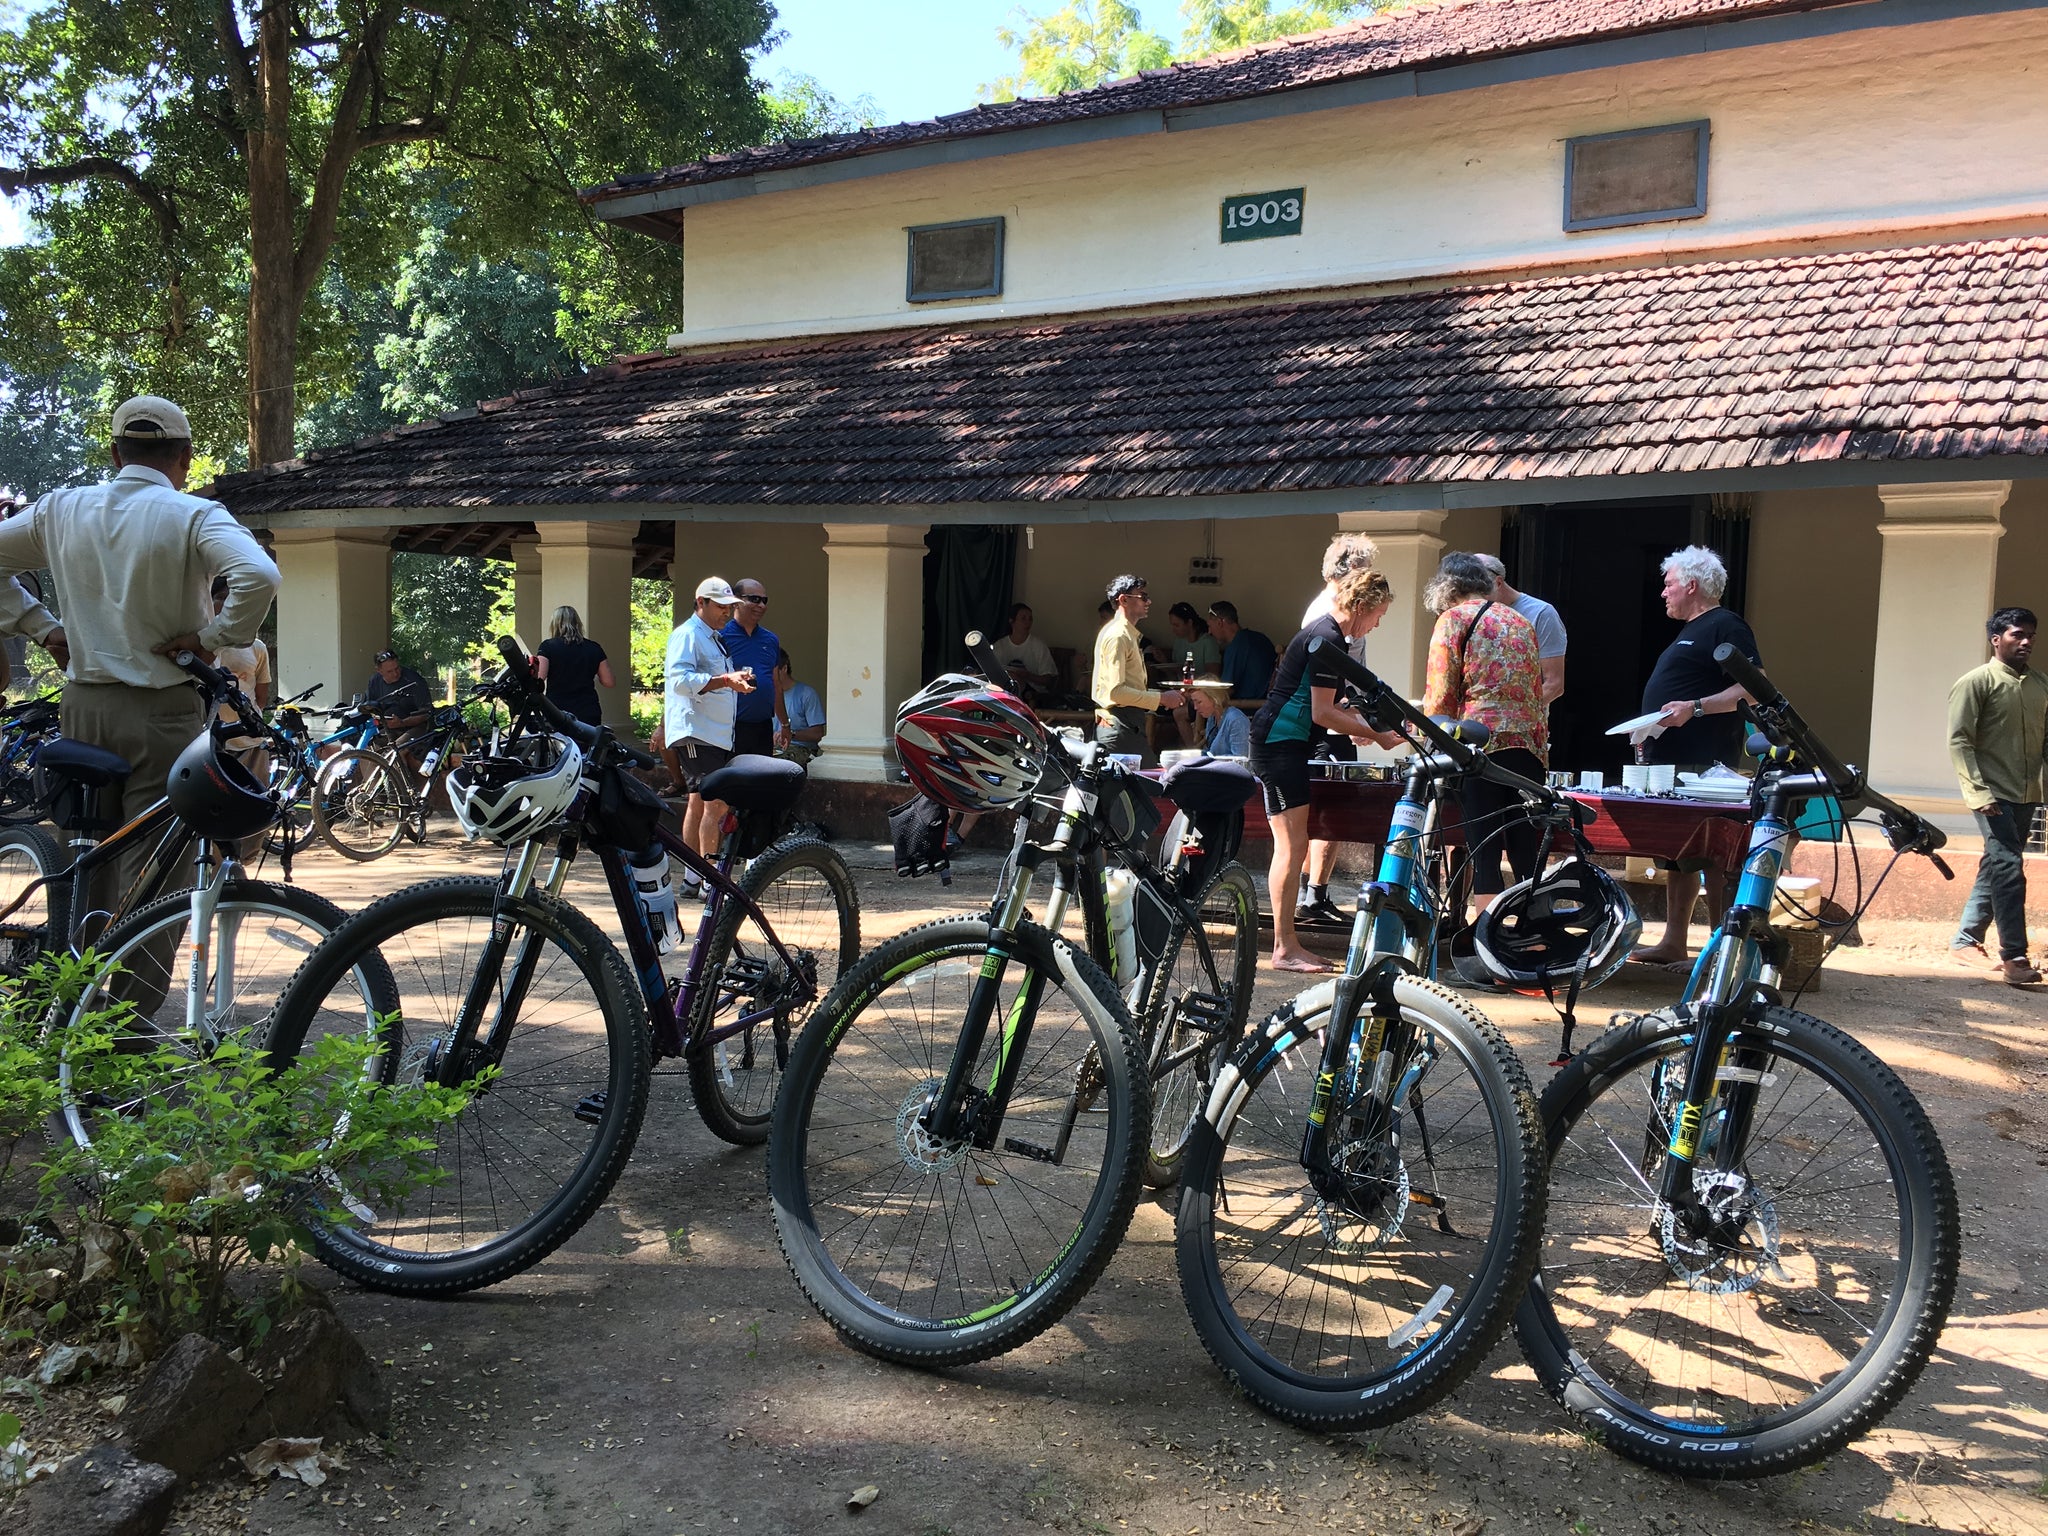 Lunch on bike safari in India